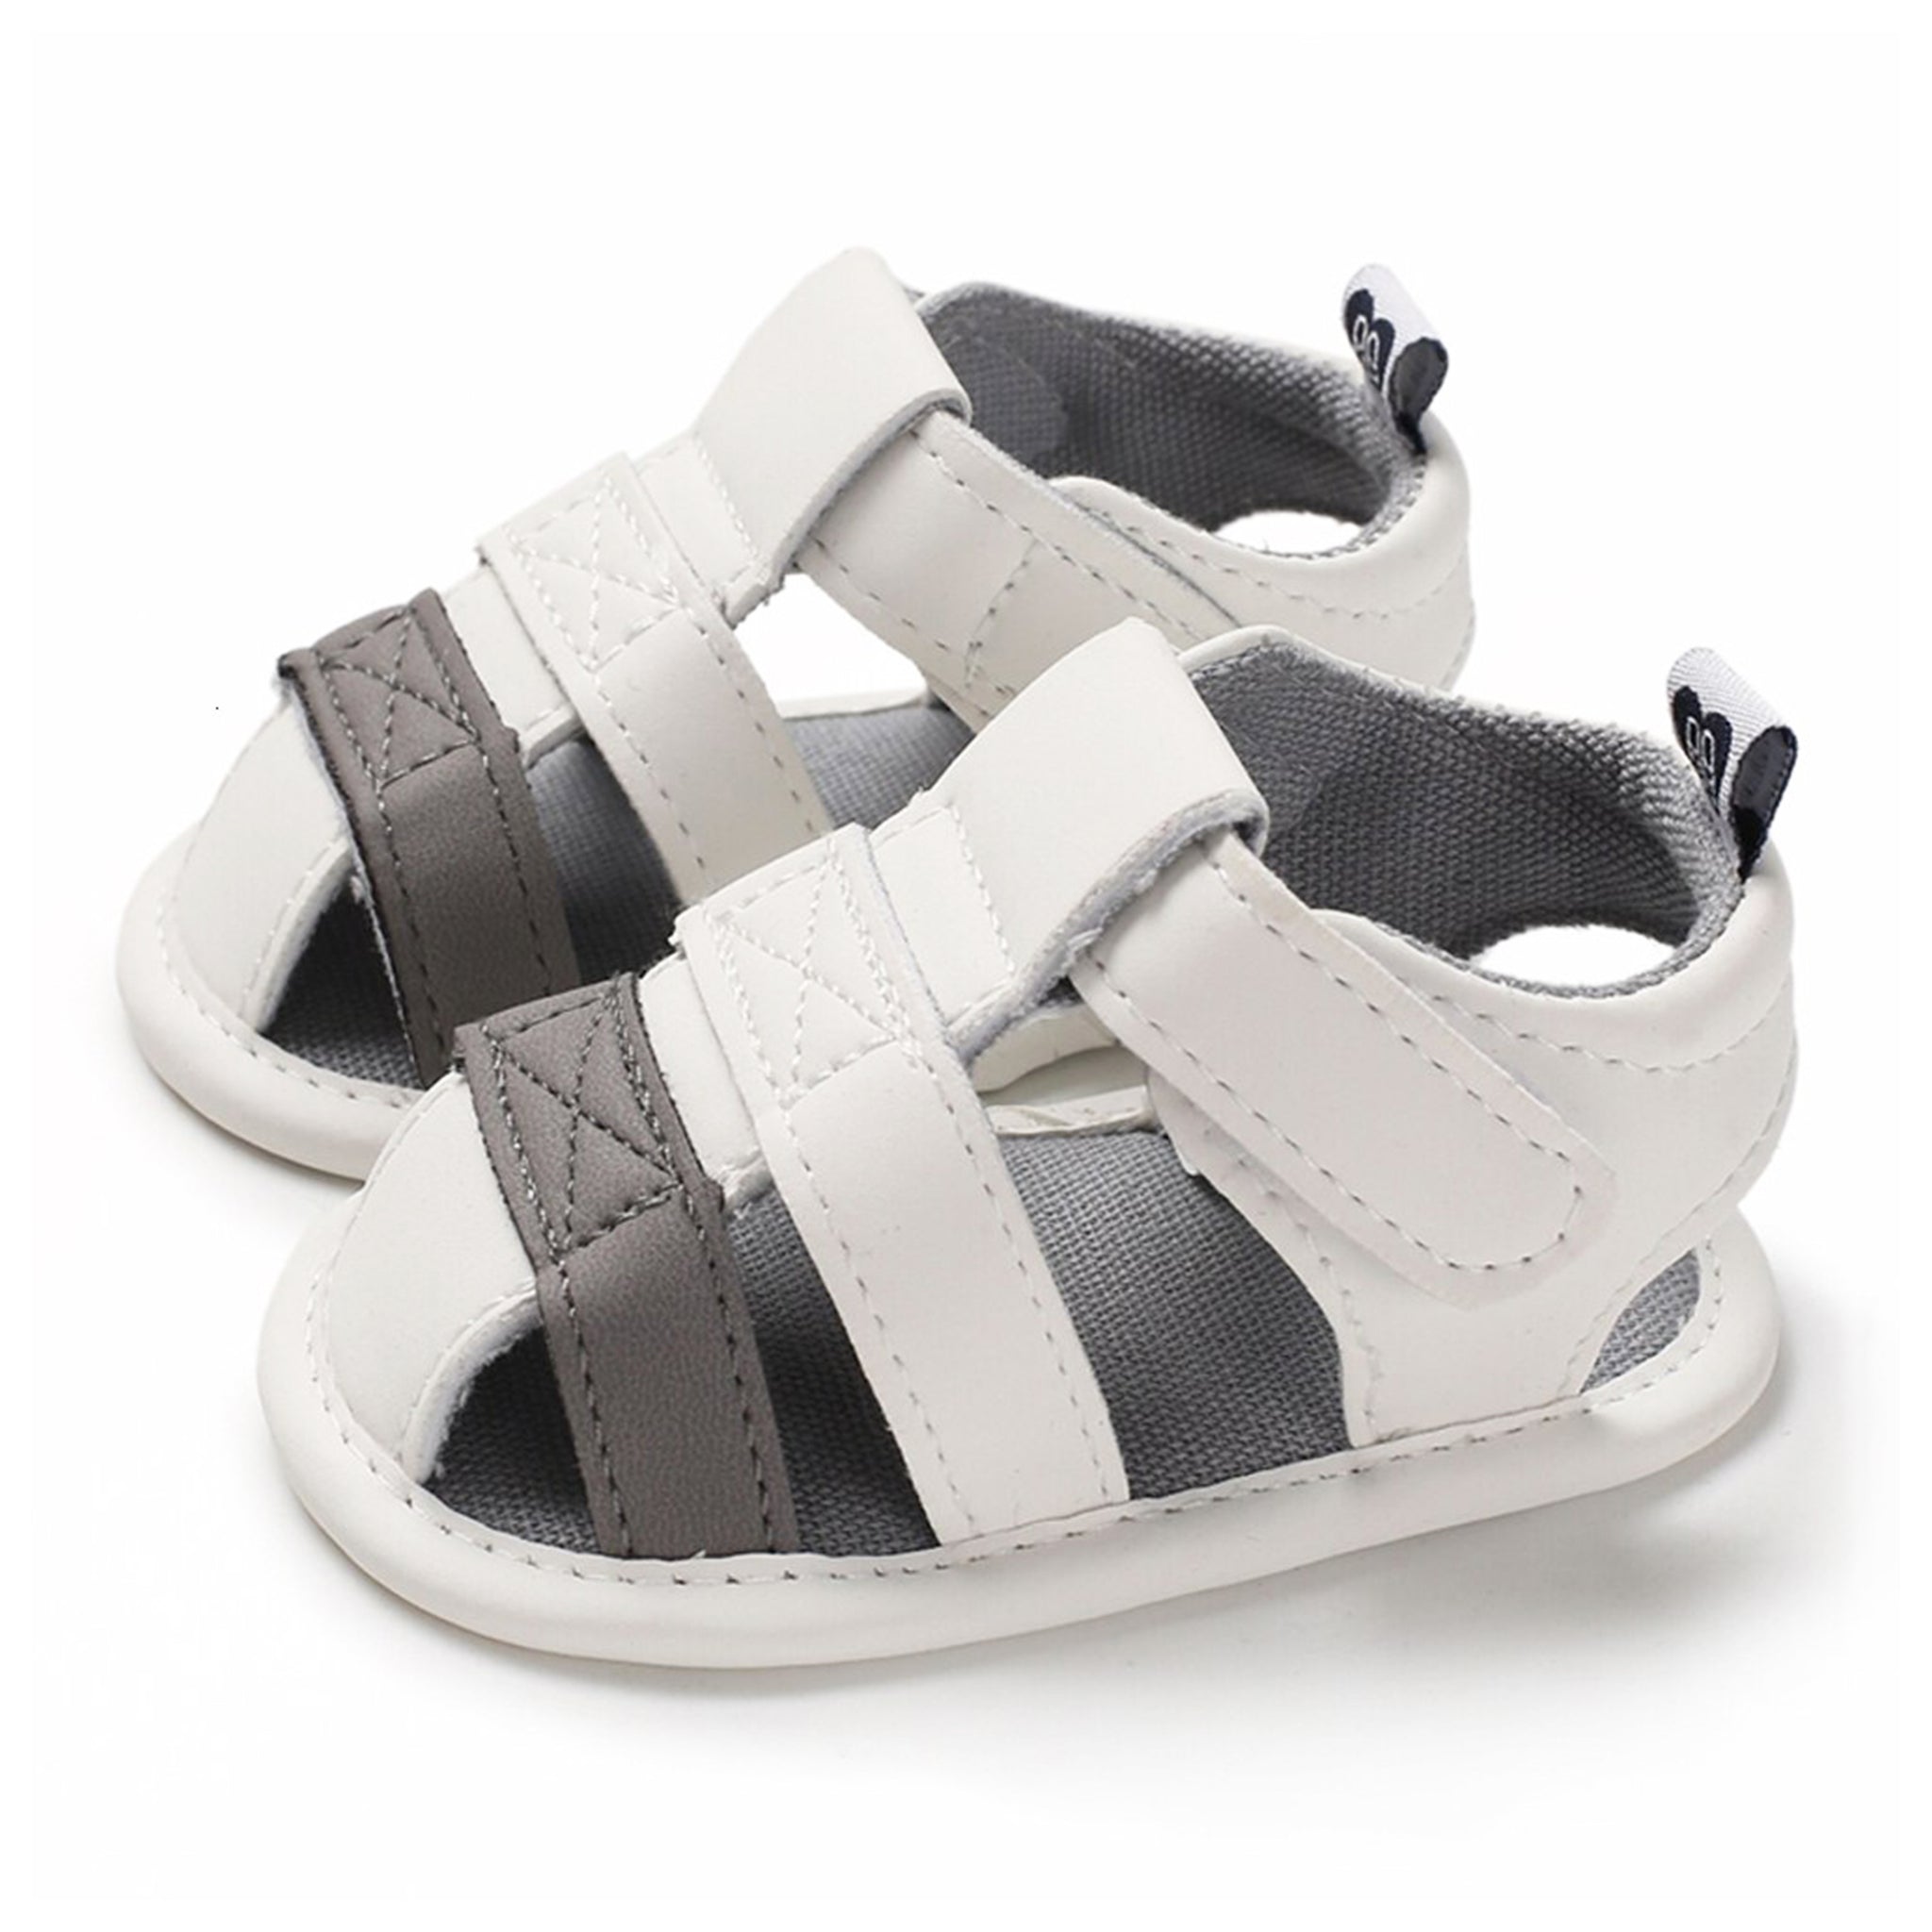 Zapatos Sandalias color blanco con gris para bebé niña y niño para verano